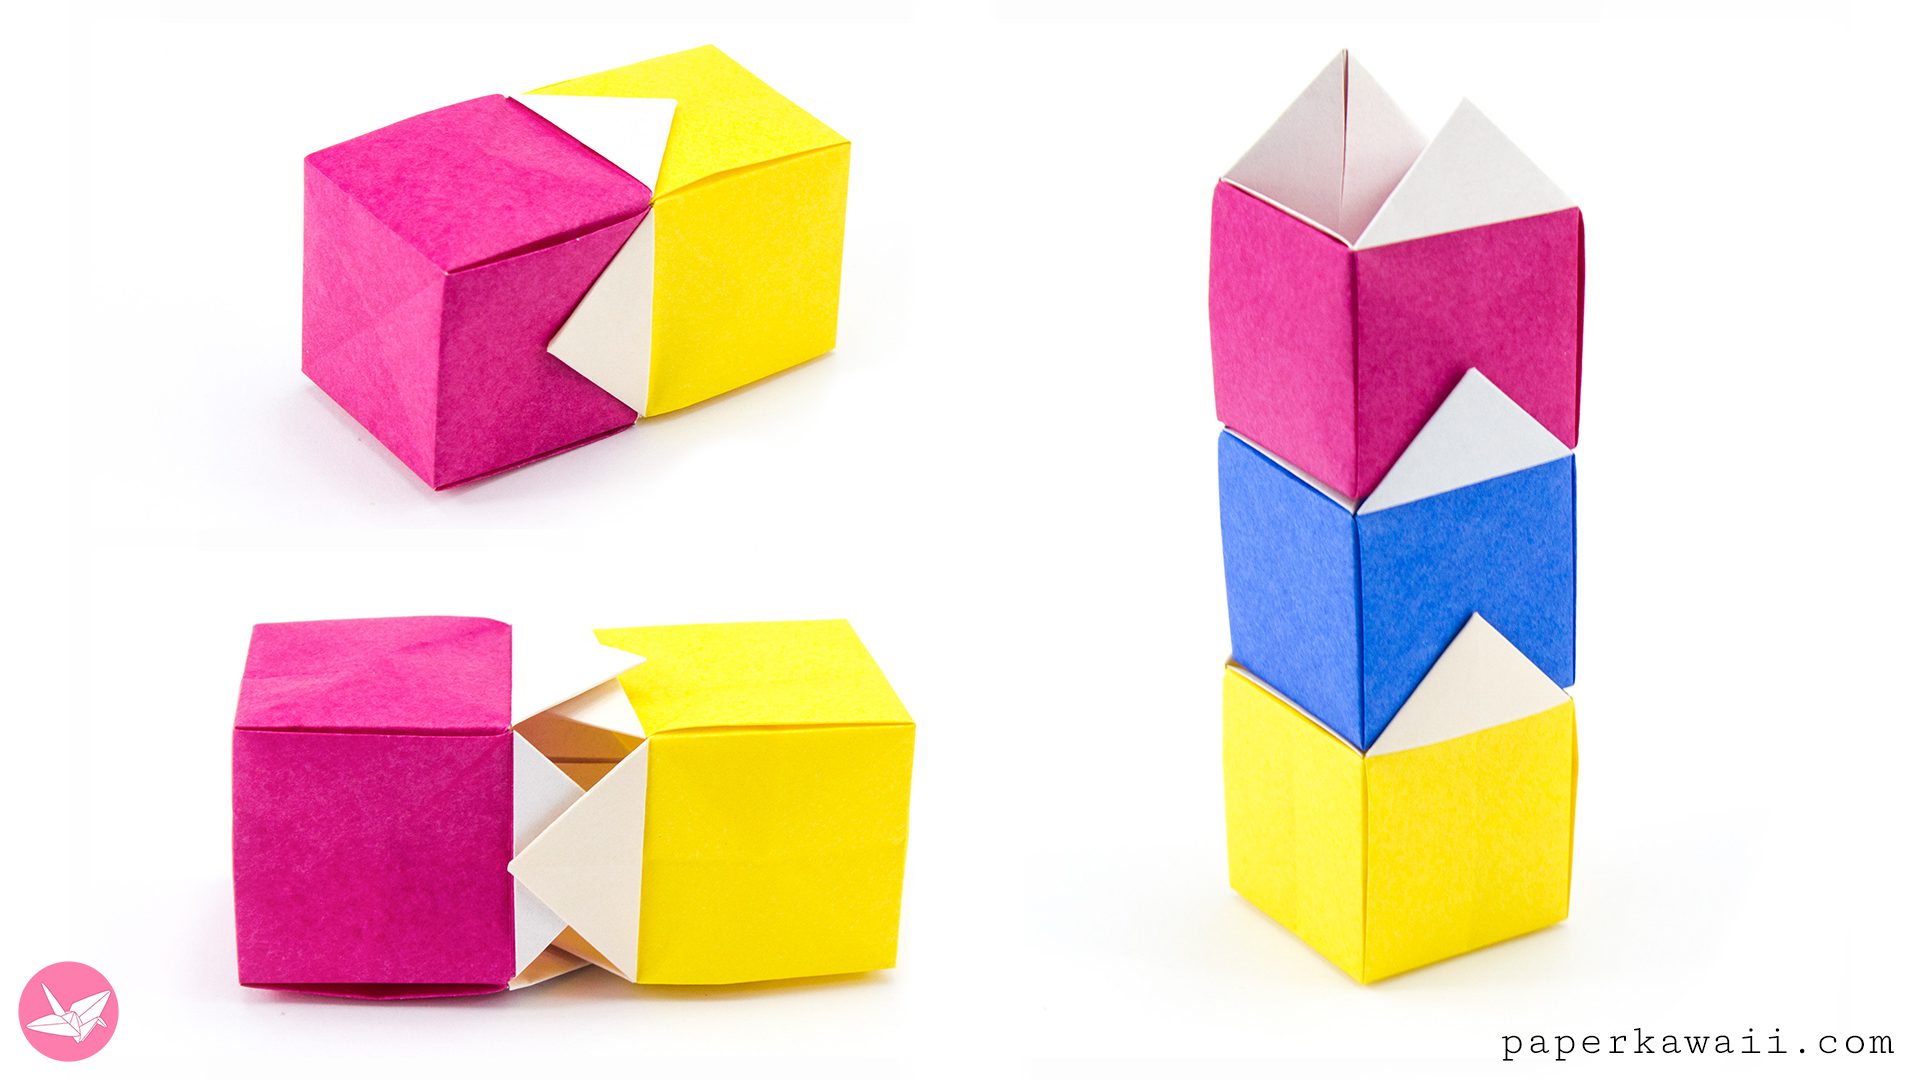 Origami Stacking House Box Box Paper Kawaii 05